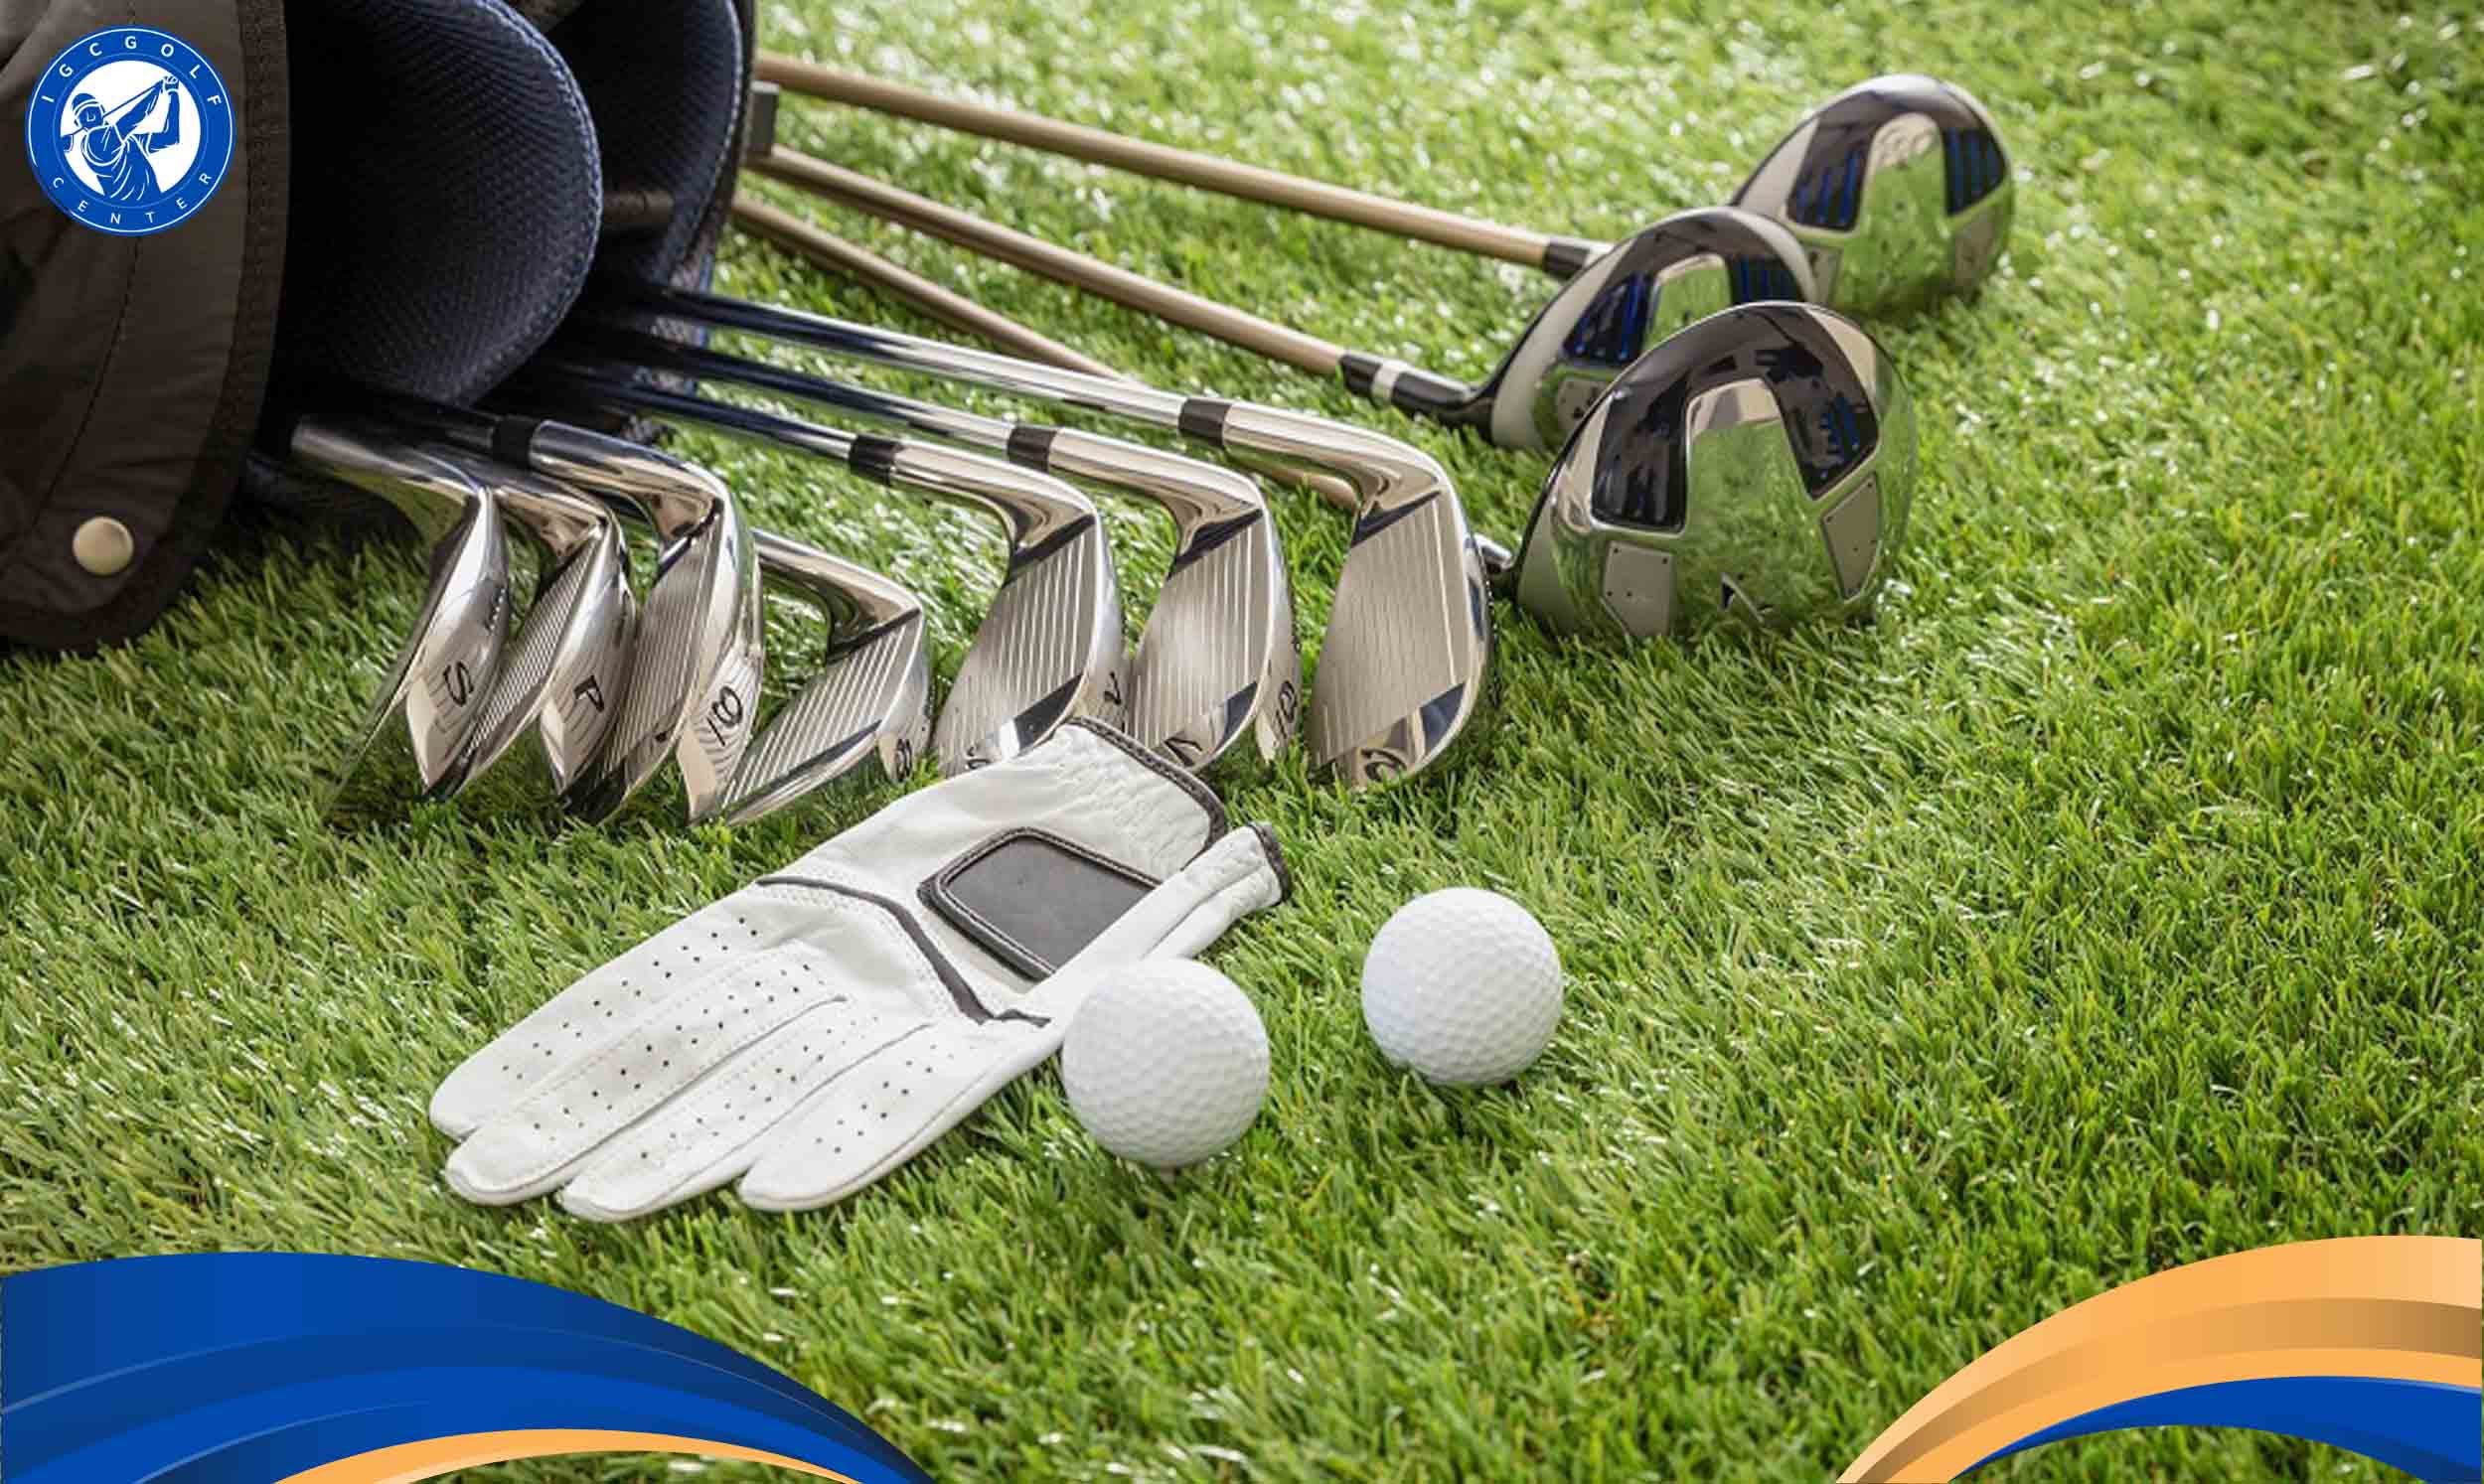 Quy định các loại gậy sử dụng trong luật đánh golf 18 lỗ